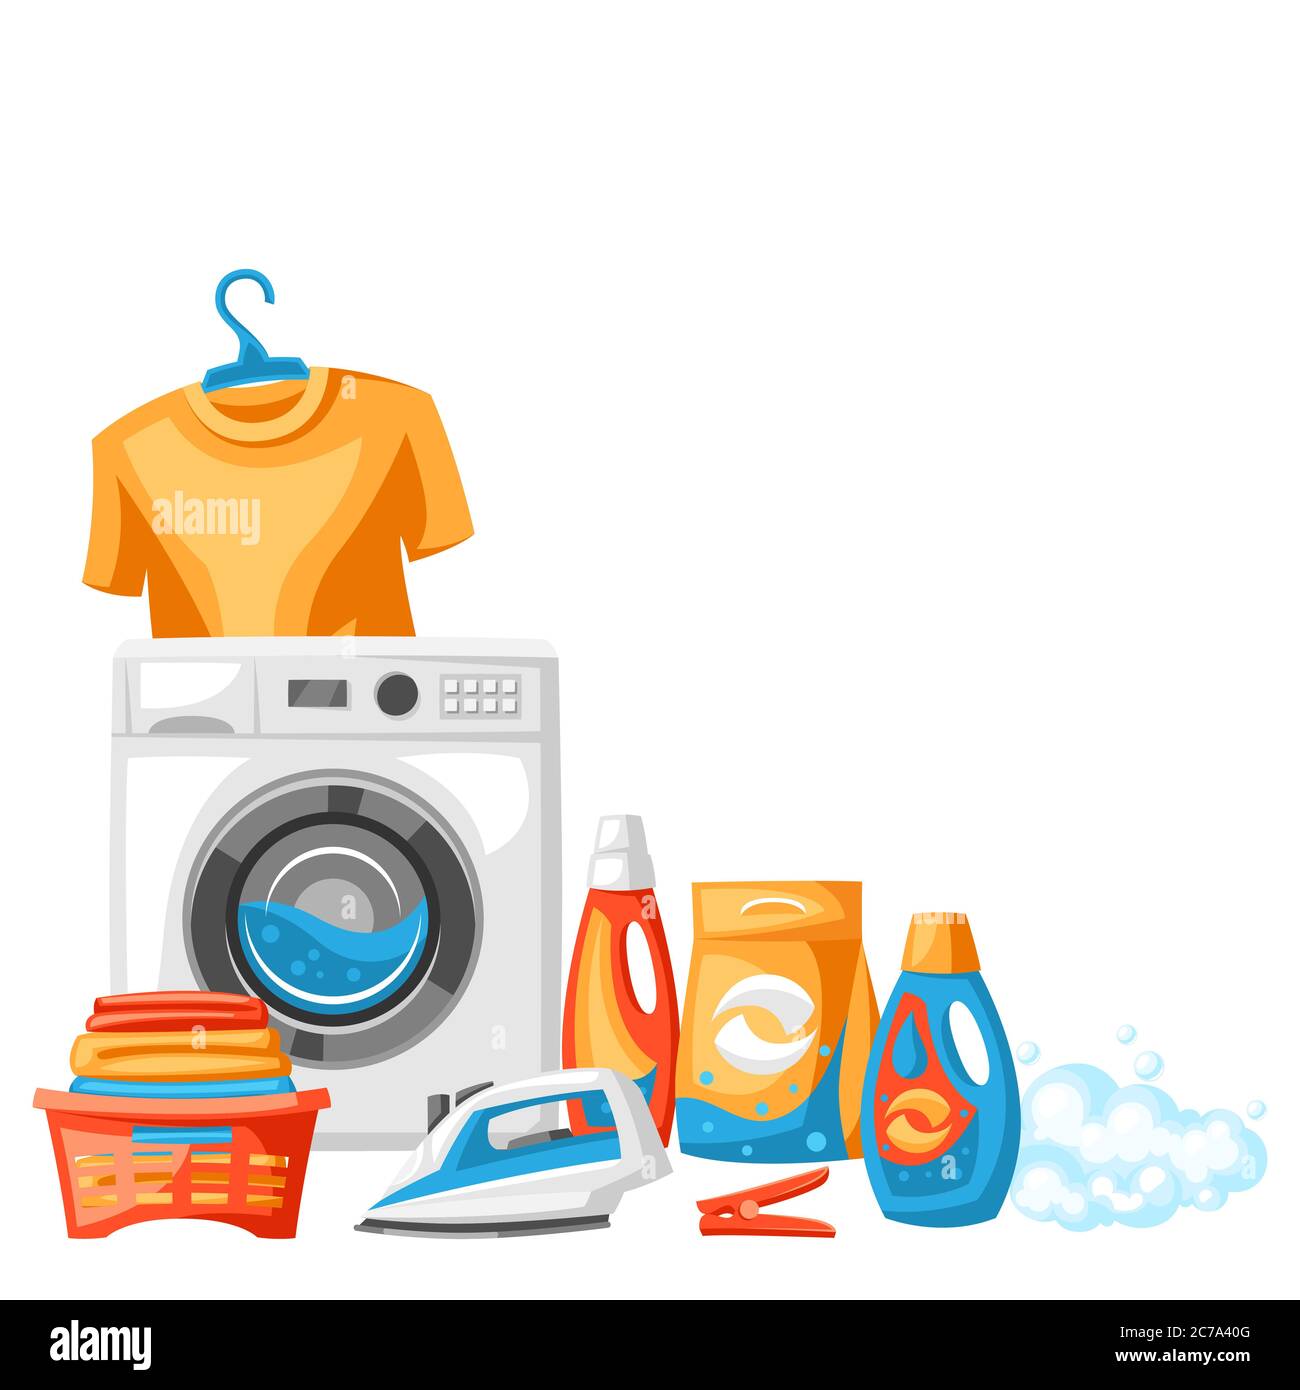 Dịch vụ giặt ủi chuyên nghiệp sẽ giúp bạn tiết kiệm thời gian và nỗ lực. Bạn chỉ cần bỏ quần áo vào giỏ và chờ nhận lại món đồ sạch sẽ, thơm mát. Hãy xem hình ảnh liên quan để khám phá dịch vụ giặt ủi tốt nhất!